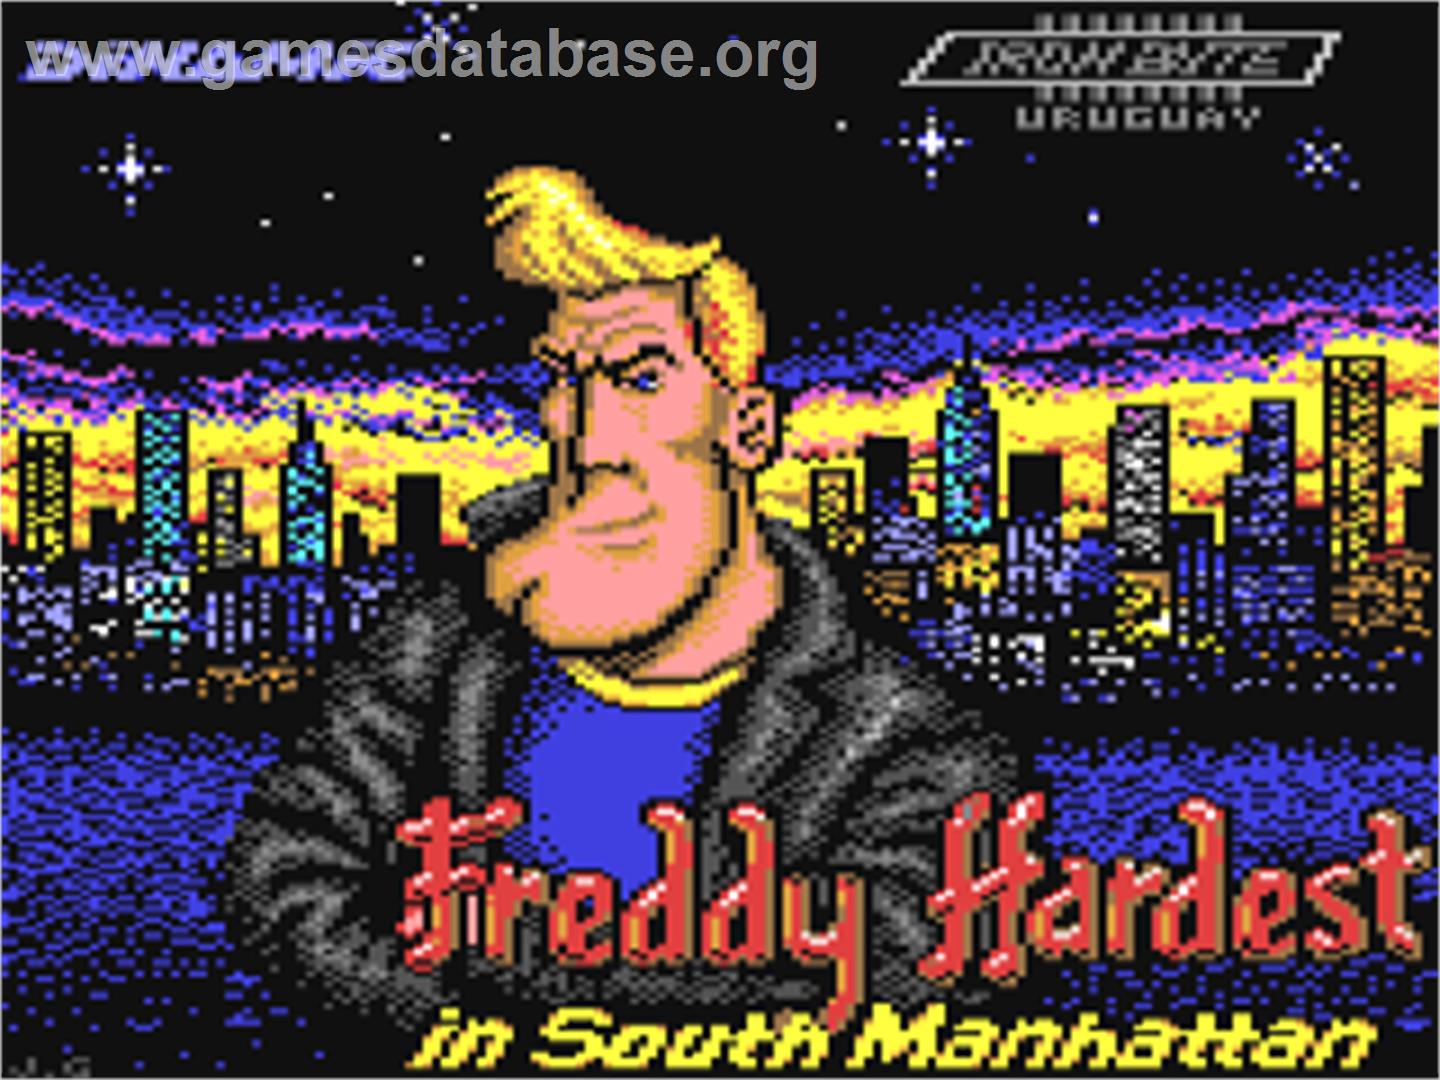 Freddy Hardest - Commodore 64 - Artwork - Title Screen